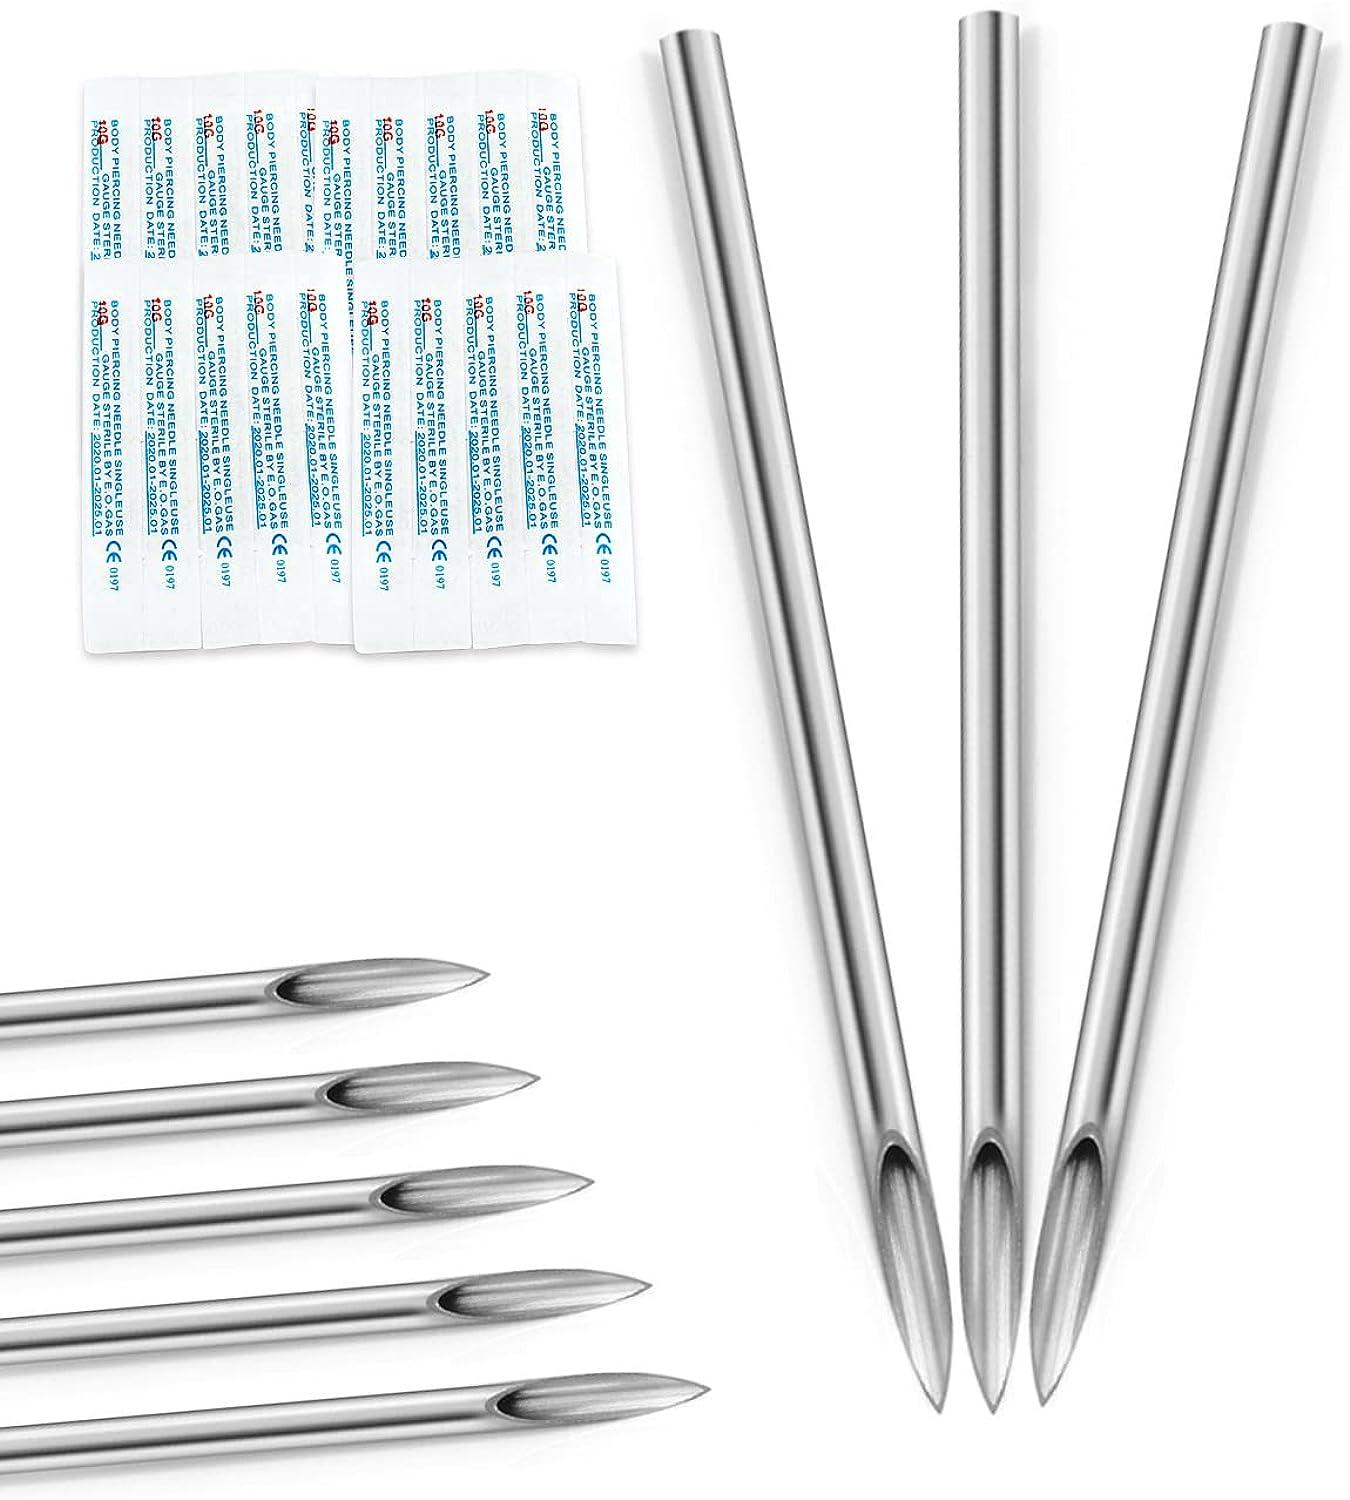 Piercing Needles - body piercing needles 12g.13g.14g.15g.16g.17g